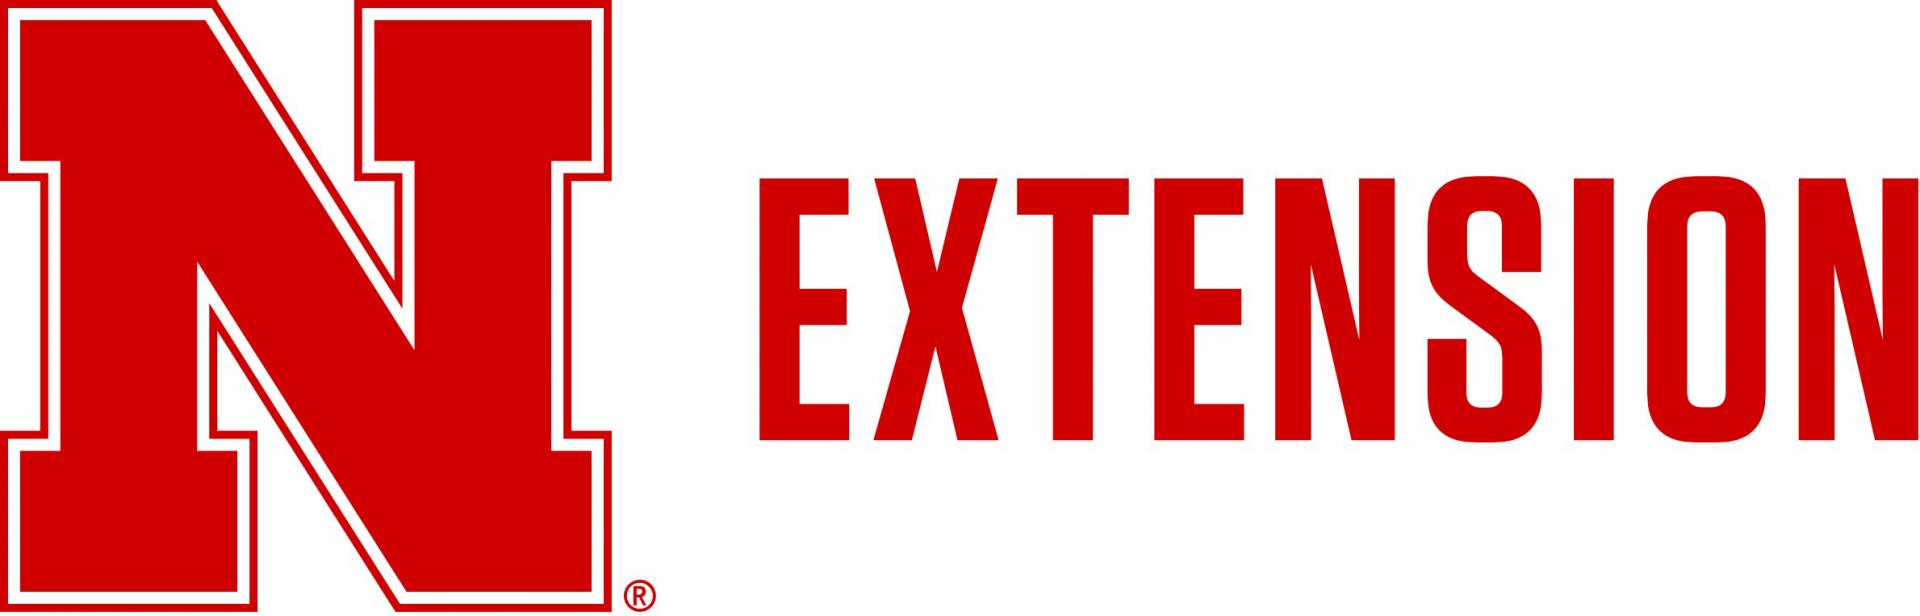 Nebraska-extension-logo